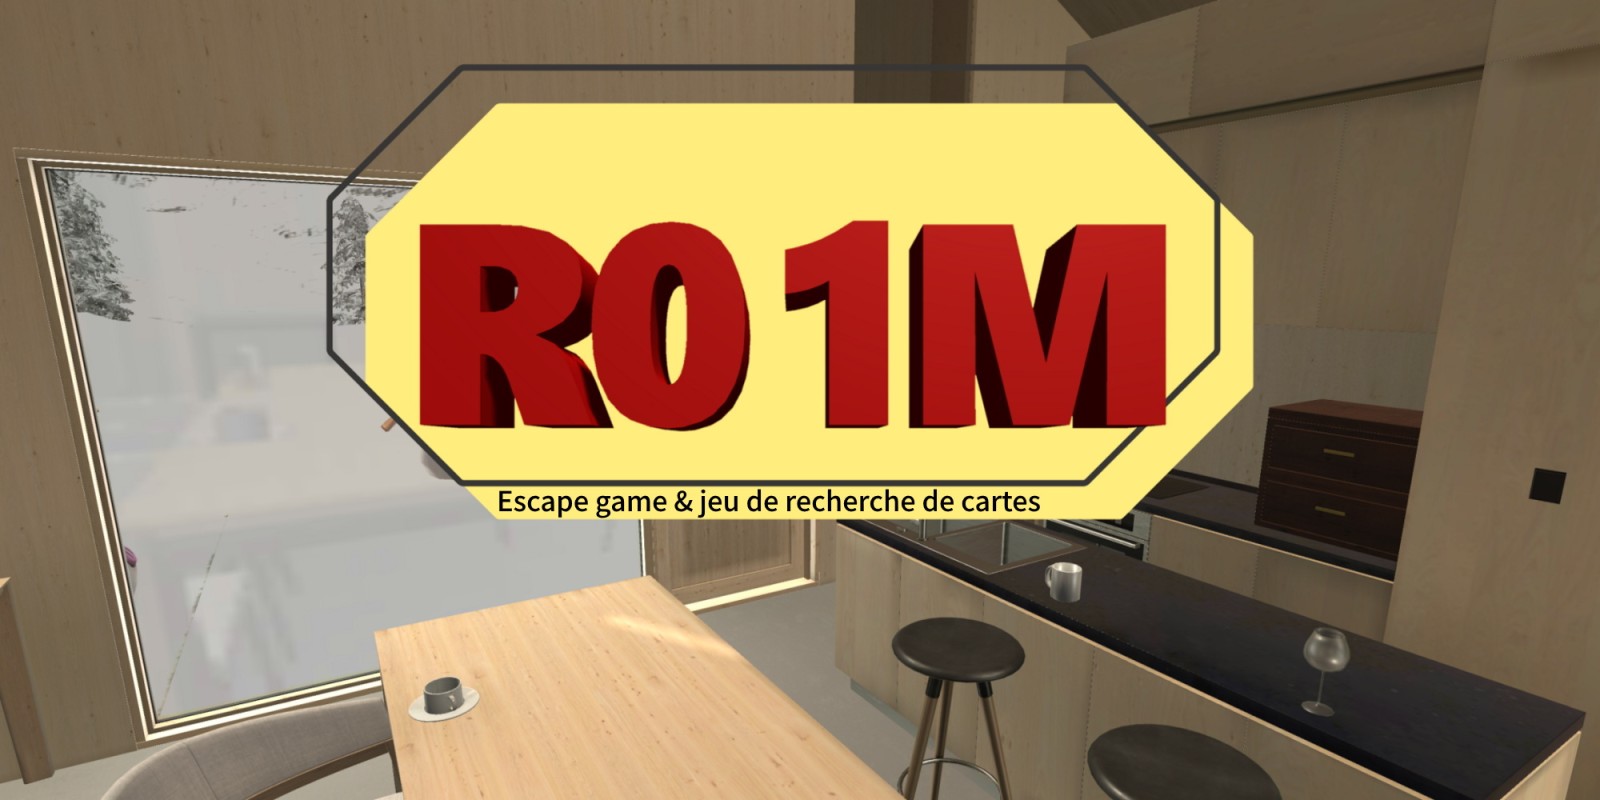 Escape game & jeu de recherche de cartes R01M